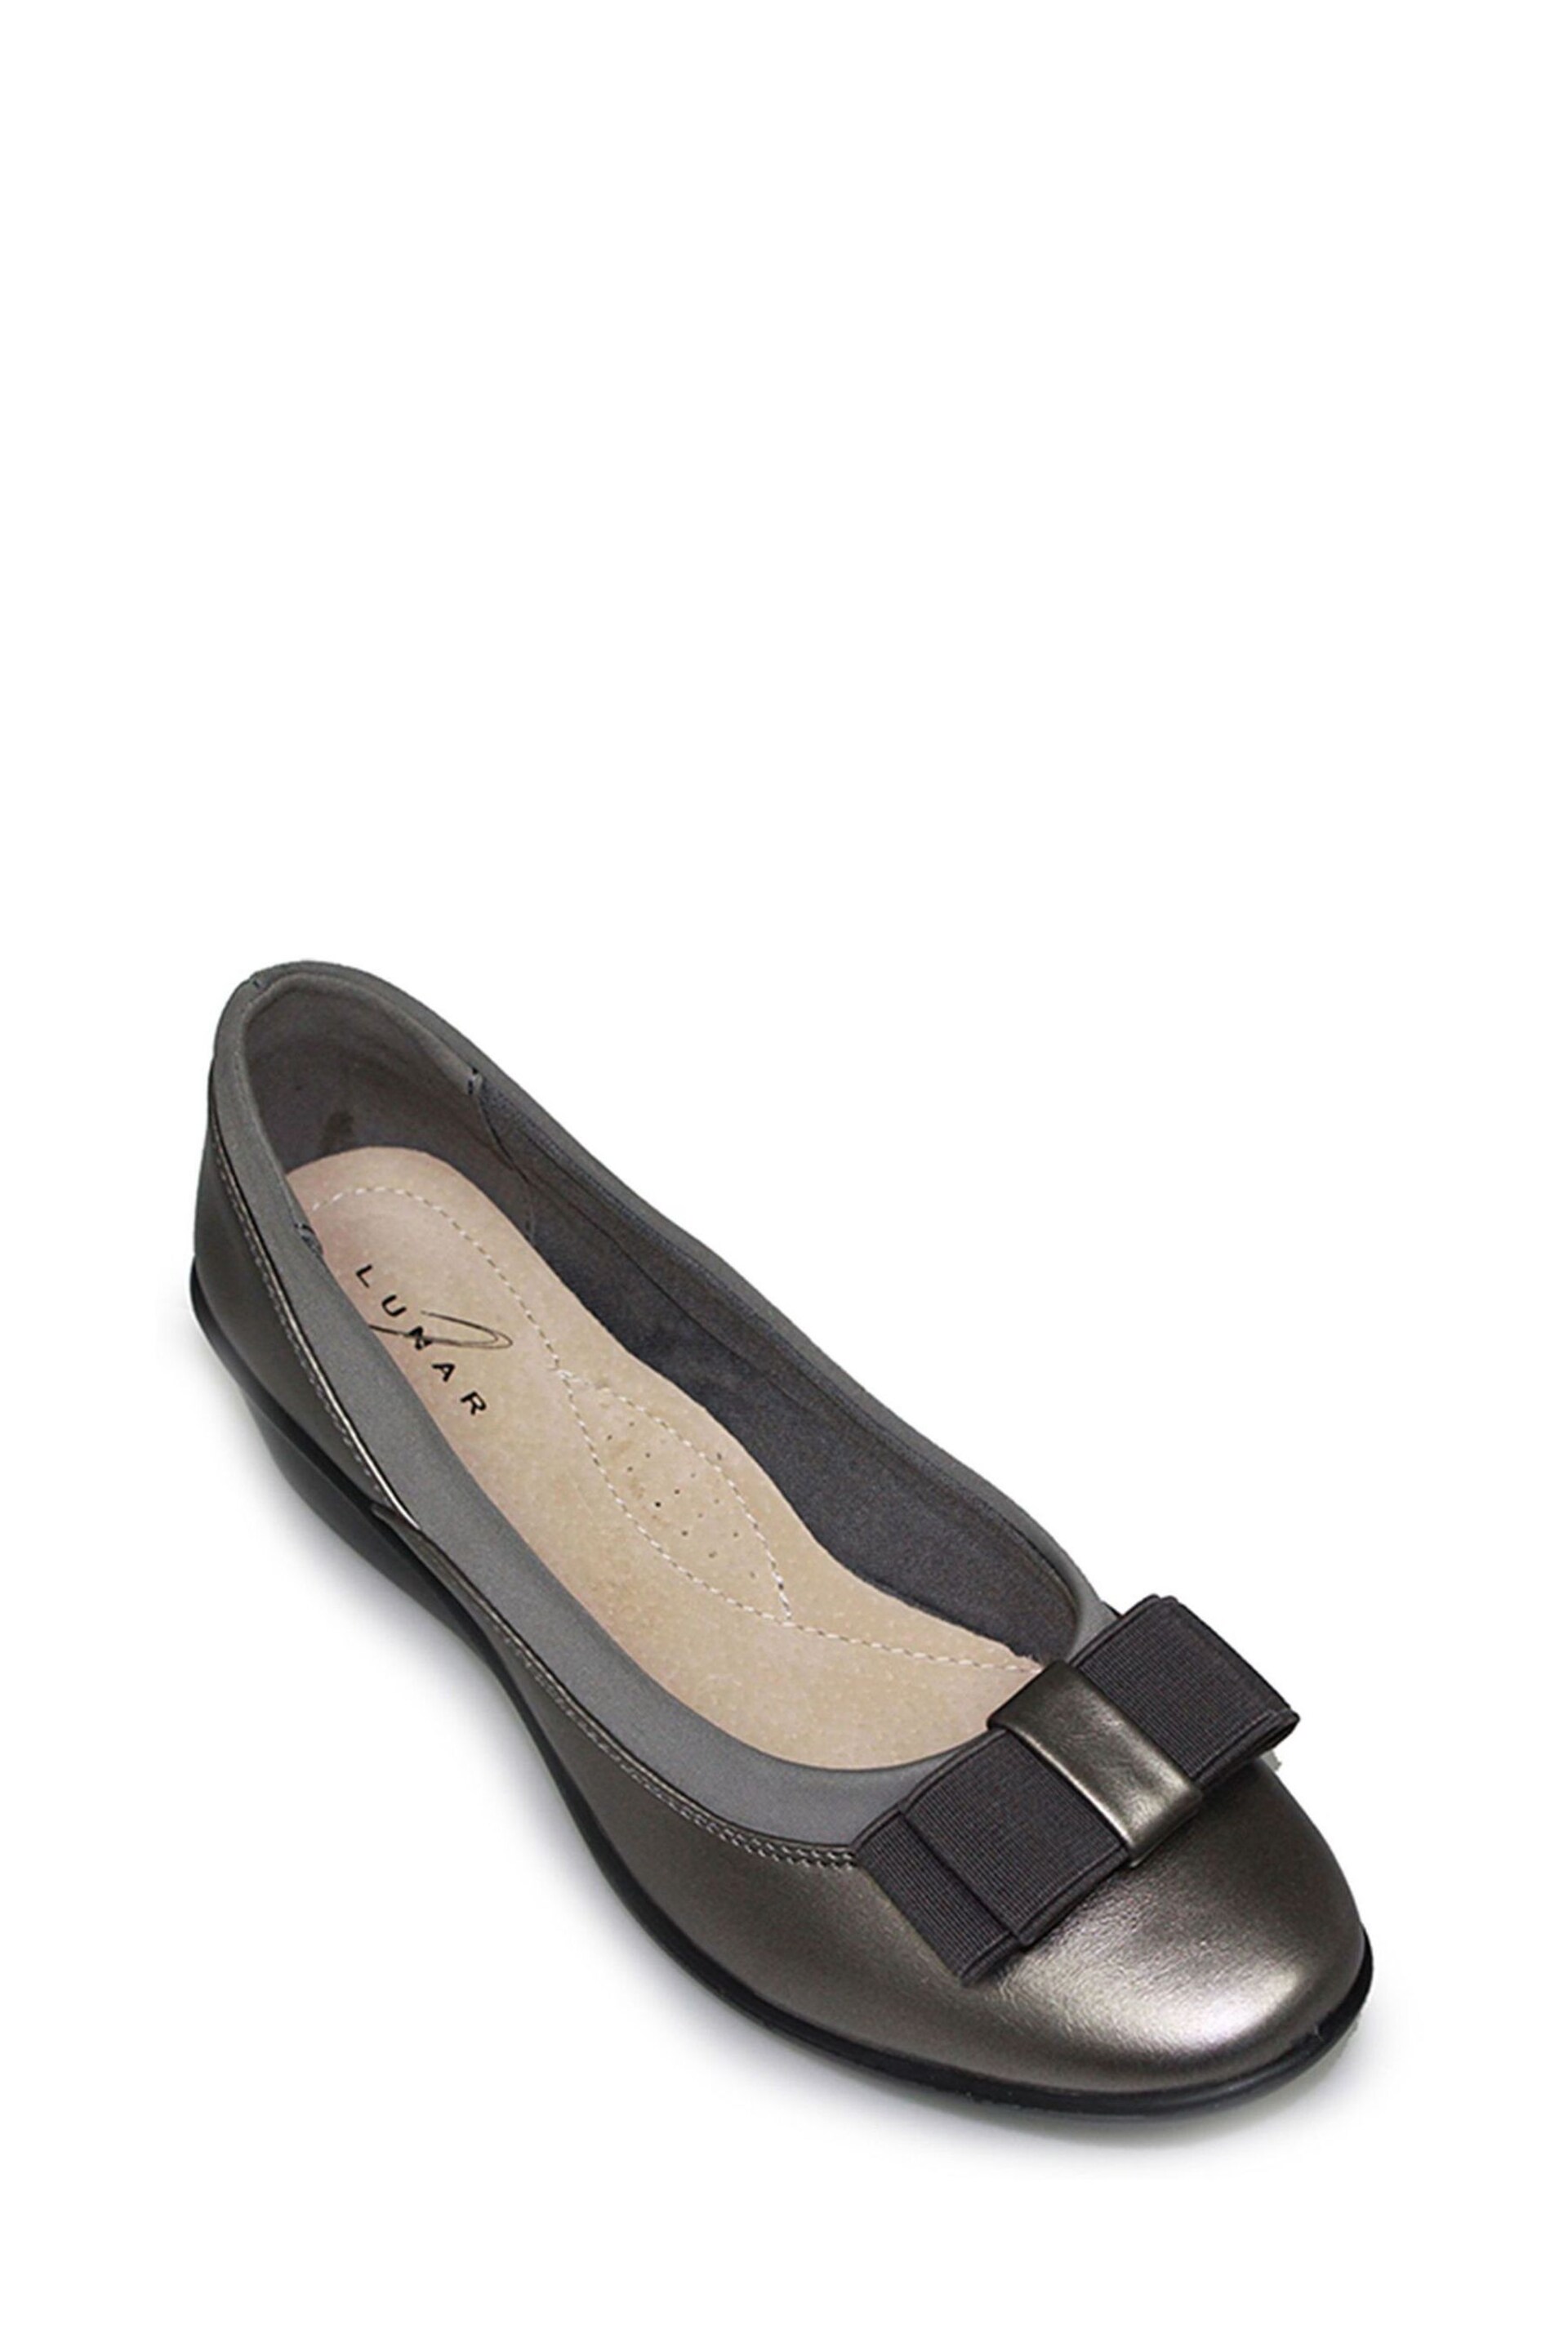 Lunar Deacon Comfort Shoes - Image 3 of 5